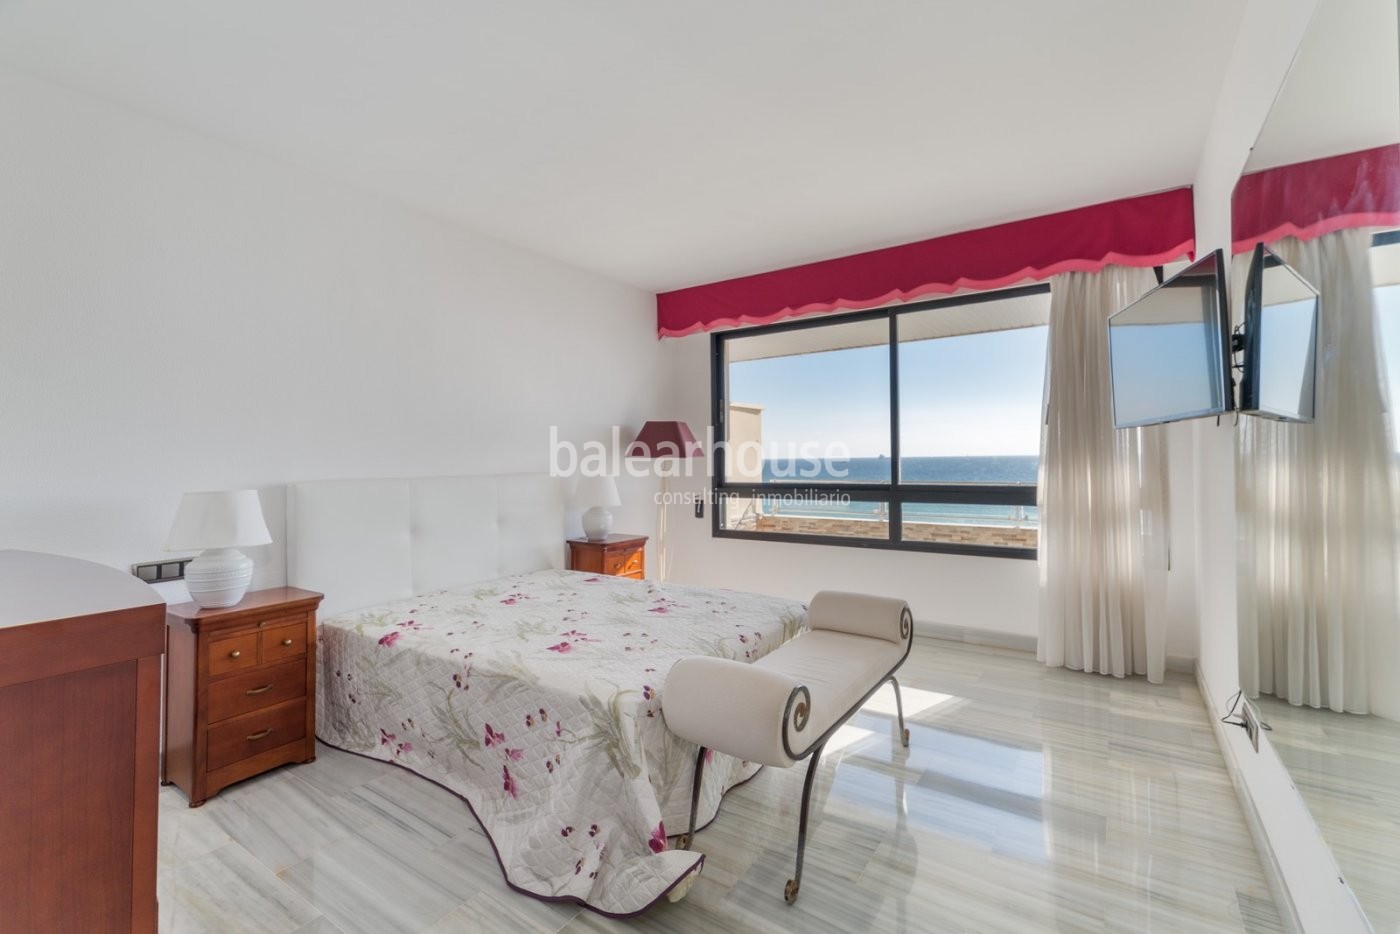 Hervorragende Wohnung direkt am Meer mit unverbaubarem Blick auf die Bucht von Palma in Portixol.